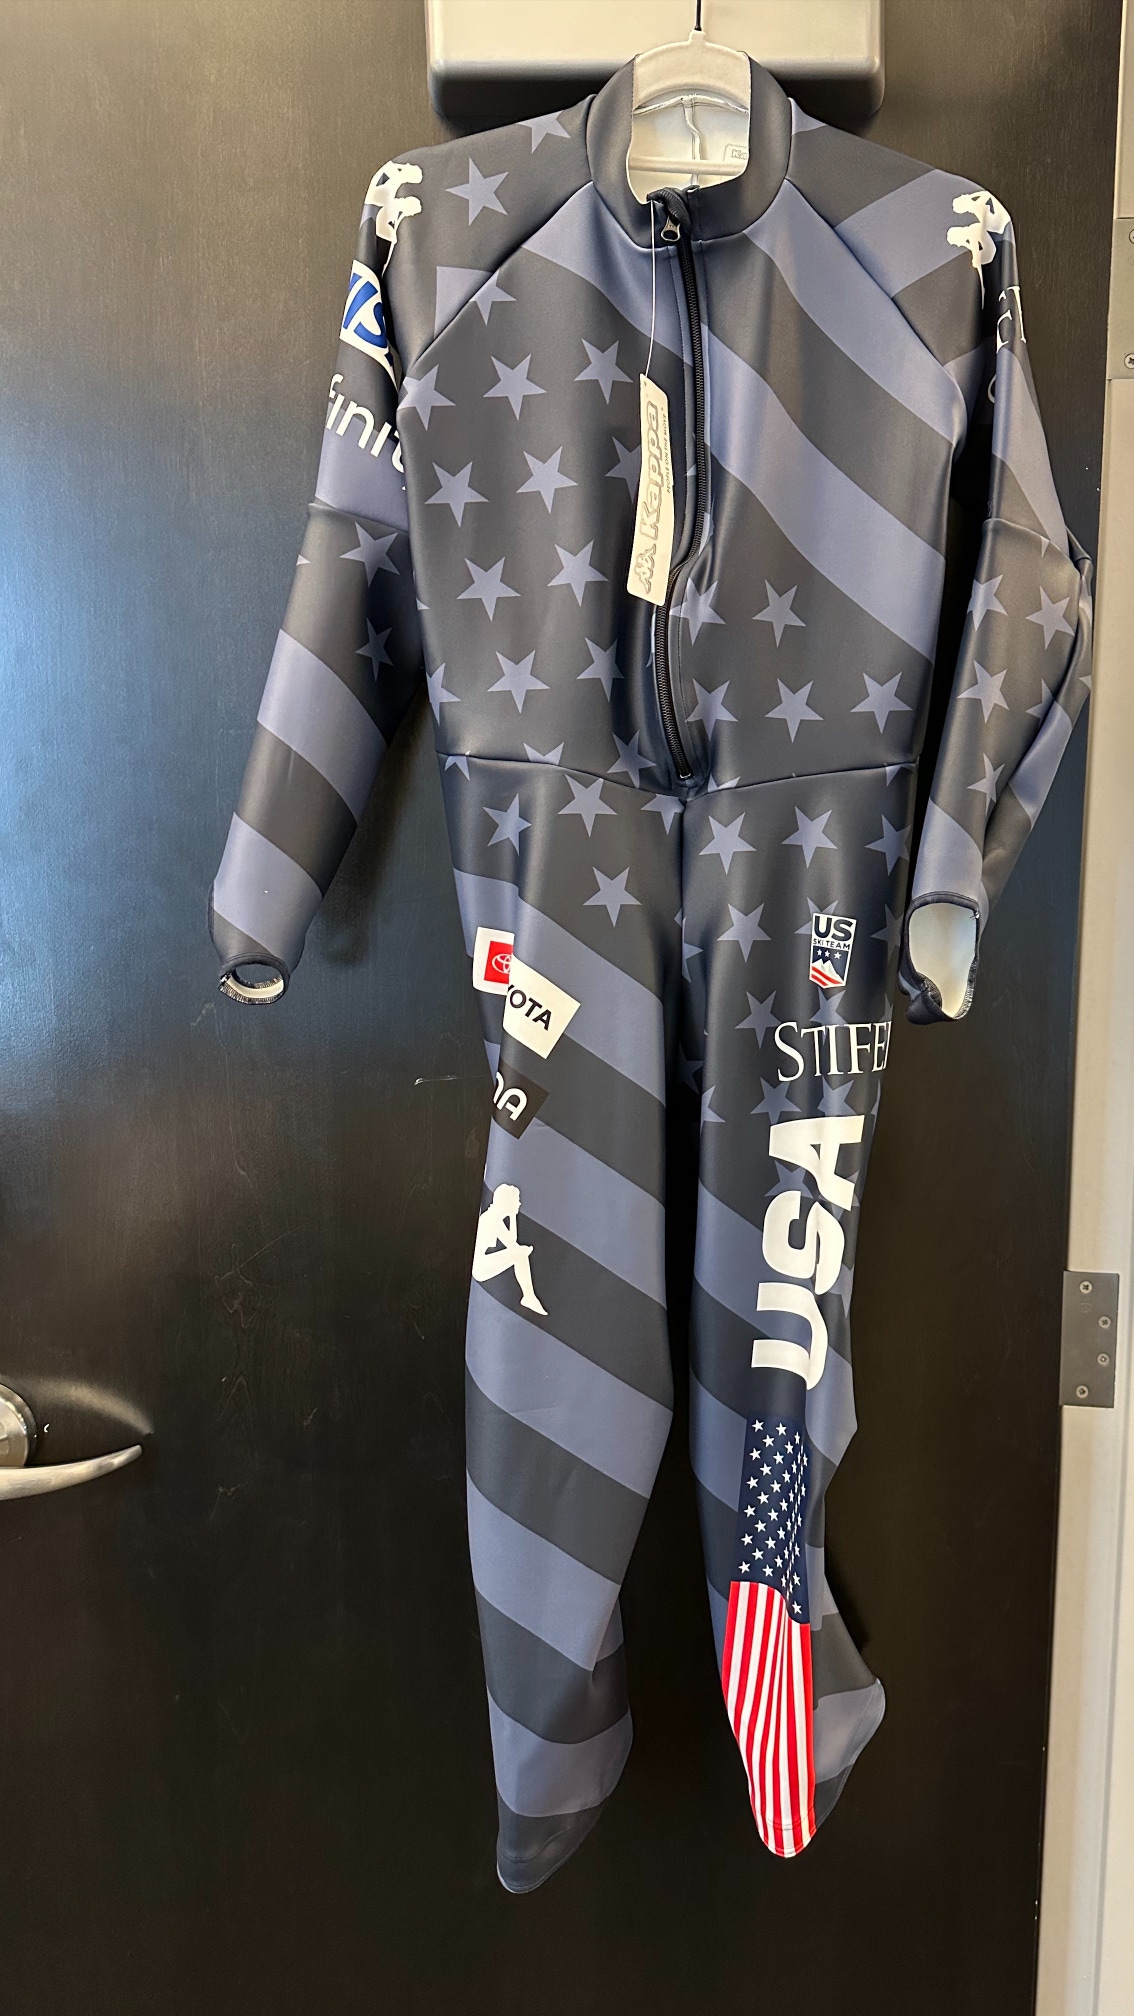 2023 U.S. Ski Team Women's New X-Small GS Suit FIS Legal